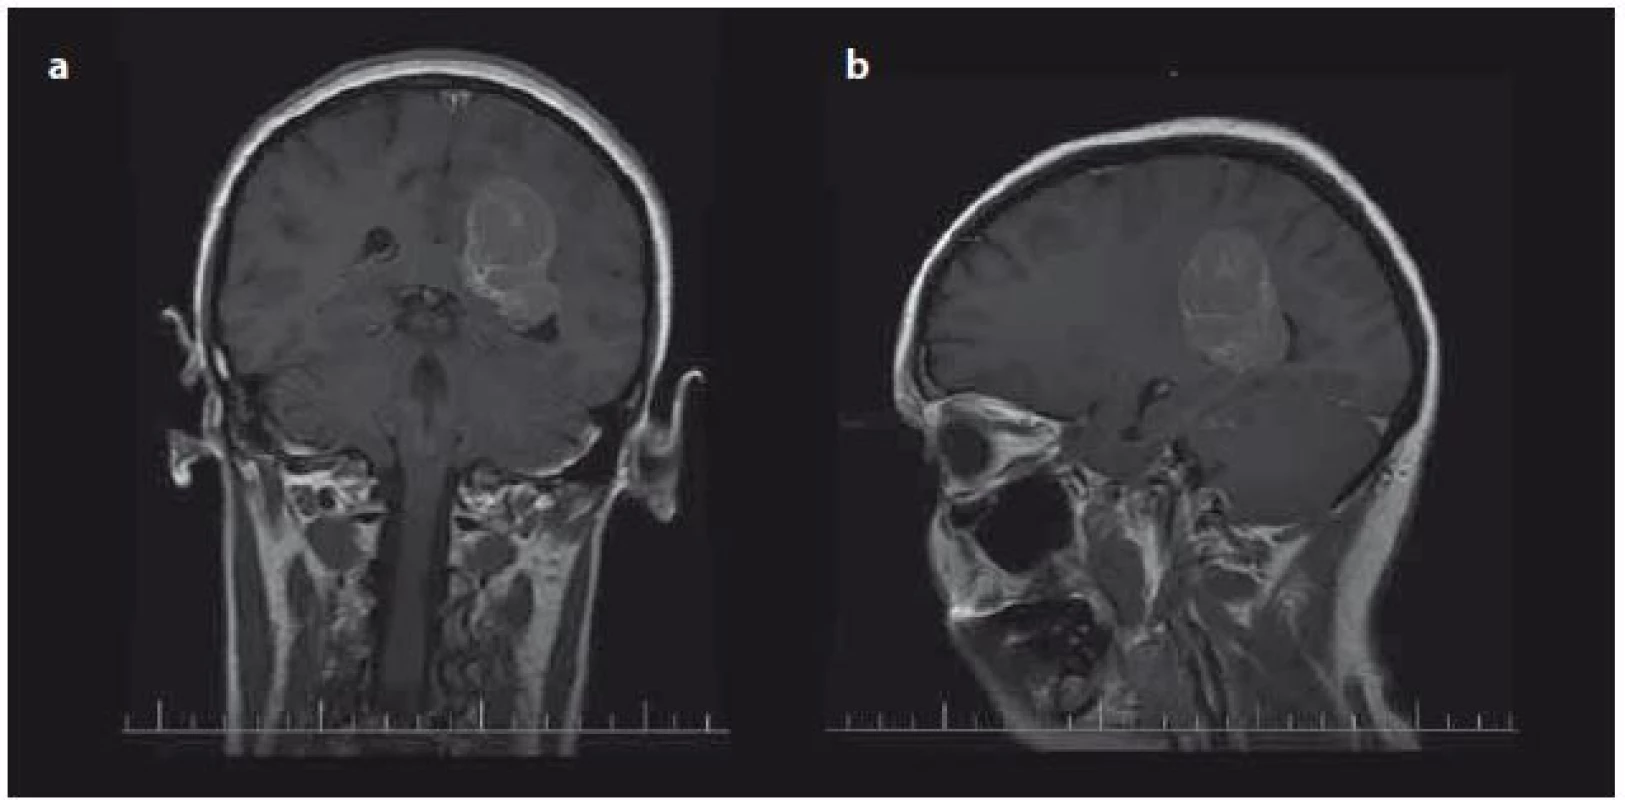 Typická lokalizace intraventrikulárních meningiomů v oblasti trigona postranních komor – předoperační MR s kontrastní látkou u pacienta s meningiomem trigona levé postranní komory koronální (a), sagitální (b).
Fig. 1. Typical localisation of intraventricular meningiomas in trigonal area of lateral ventricles – preoperative contrast enhanced T1-weighed image of patient with meningioma of left trigonal area (a) coronal plane, (b) sagital plane.